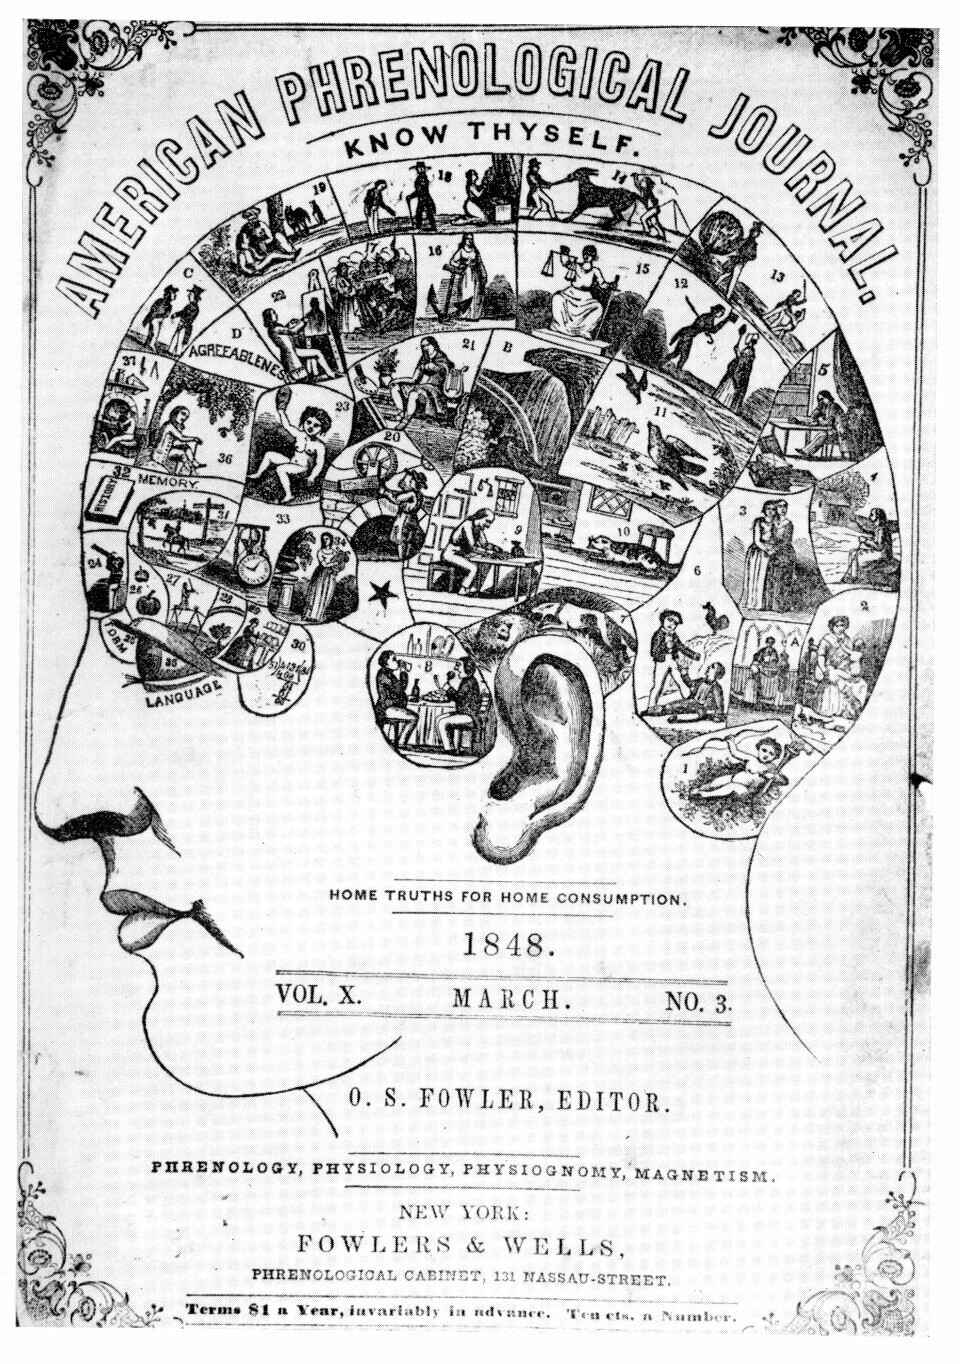 Det frenologiske hjerneatlaset, vist på forsiden av American Phrenological Journal i mars 1848.